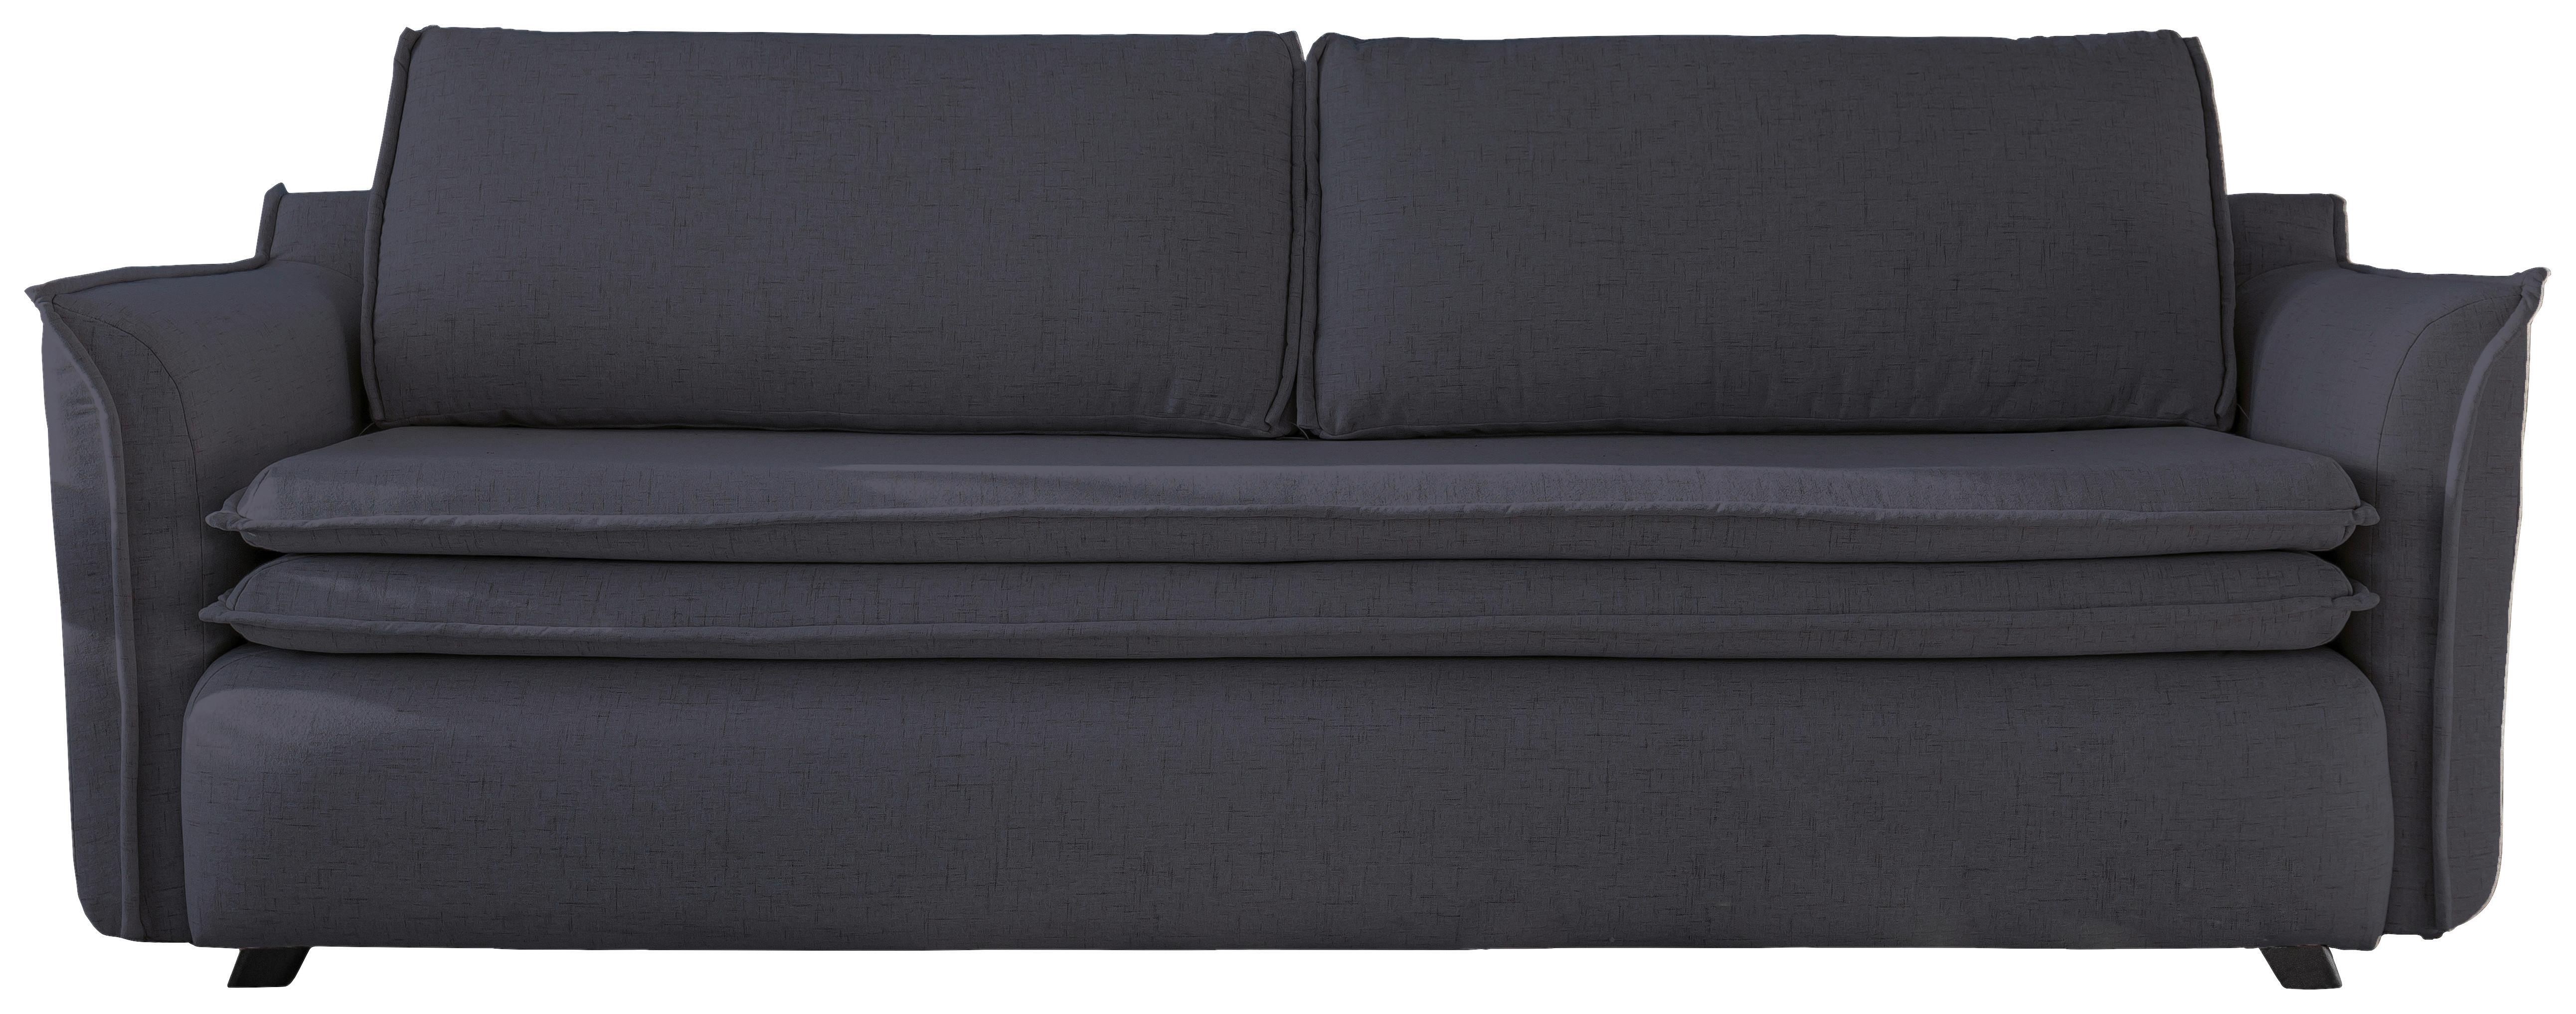 3-Sitzer-Sofa Mit Schlaffunktion und Bettkasten Charming Charlie - Anthrazit/Schwarz, Basics, Textil (225/85/90cm) - MID.YOU